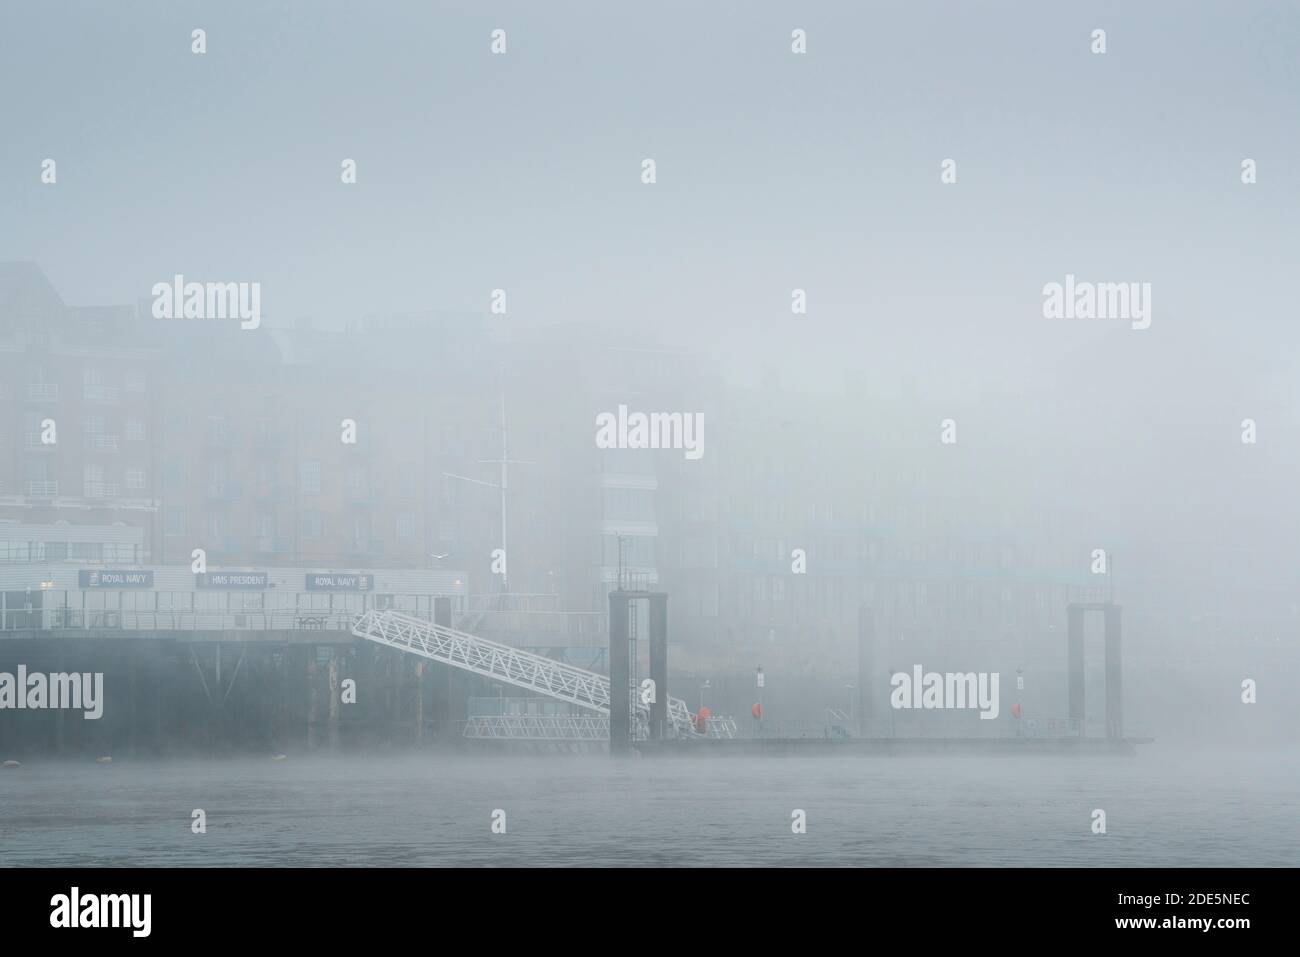 HMS President Royal Navy Reserve Pier und Themse im dichten Nebel und Nebel bei nebligen und nebligen Wetter während Covid-19 Coronavirus Lockdown, England, Großbritannien Stockfoto